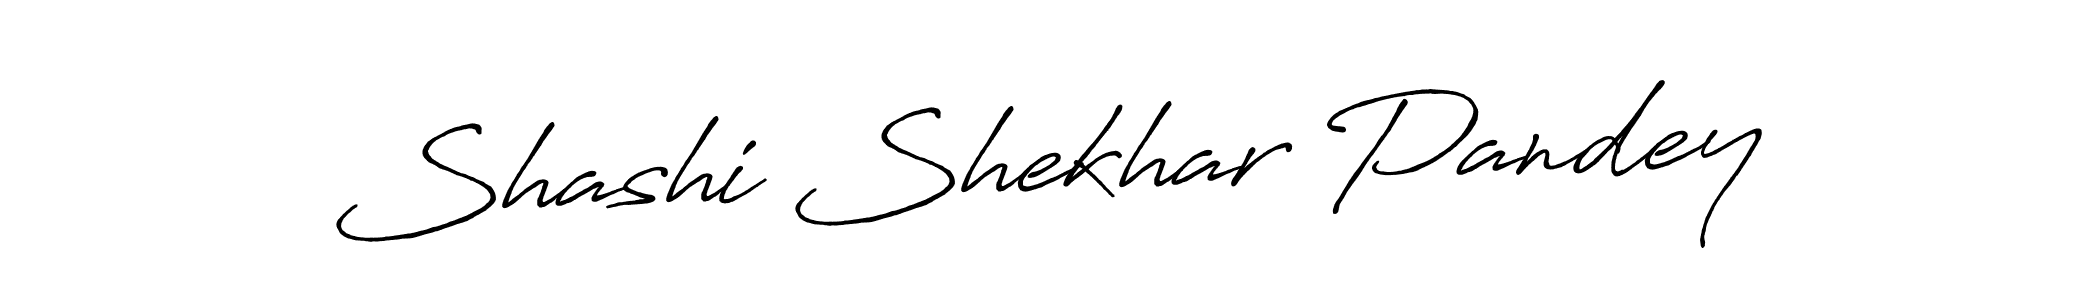 Shashi Shekhar Pandey stylish signature style. Best Handwritten Sign (Antro_Vectra_Bolder) for my name. Handwritten Signature Collection Ideas for my name Shashi Shekhar Pandey. Shashi Shekhar Pandey signature style 7 images and pictures png